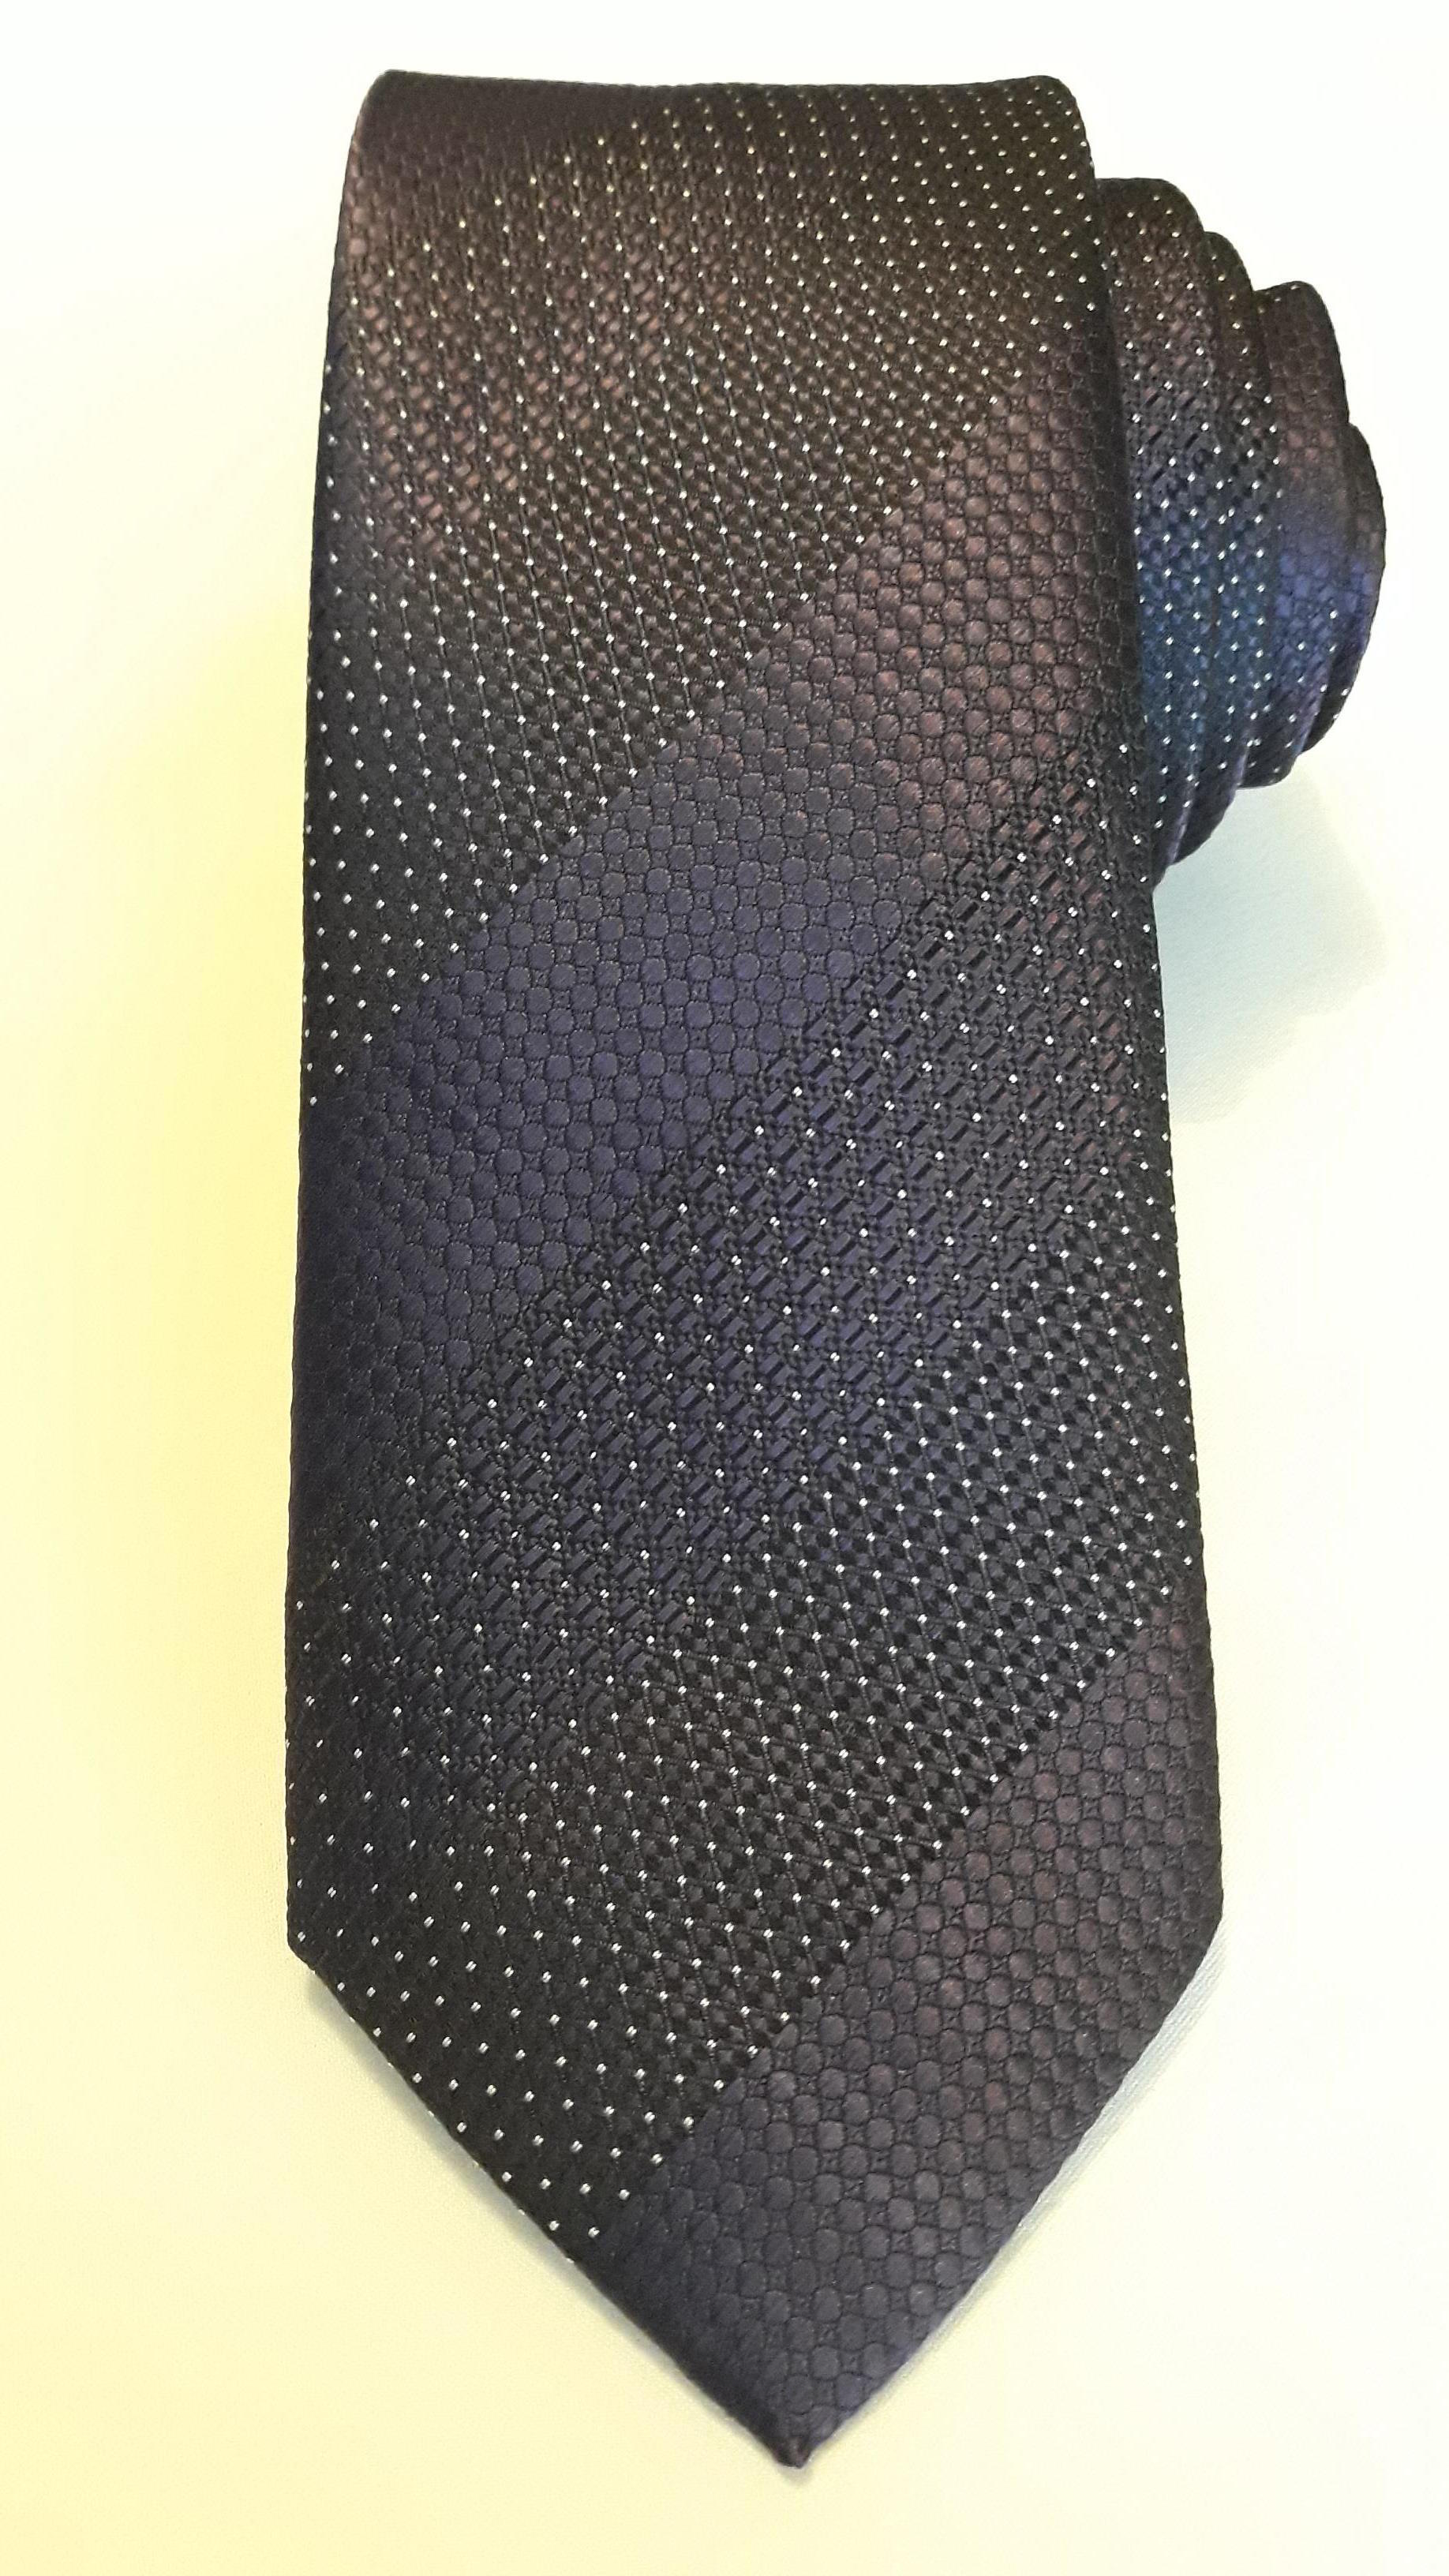 Pierre Cardin kravat.Orjinal urun. Mor tonlar,%100 Microfiber.